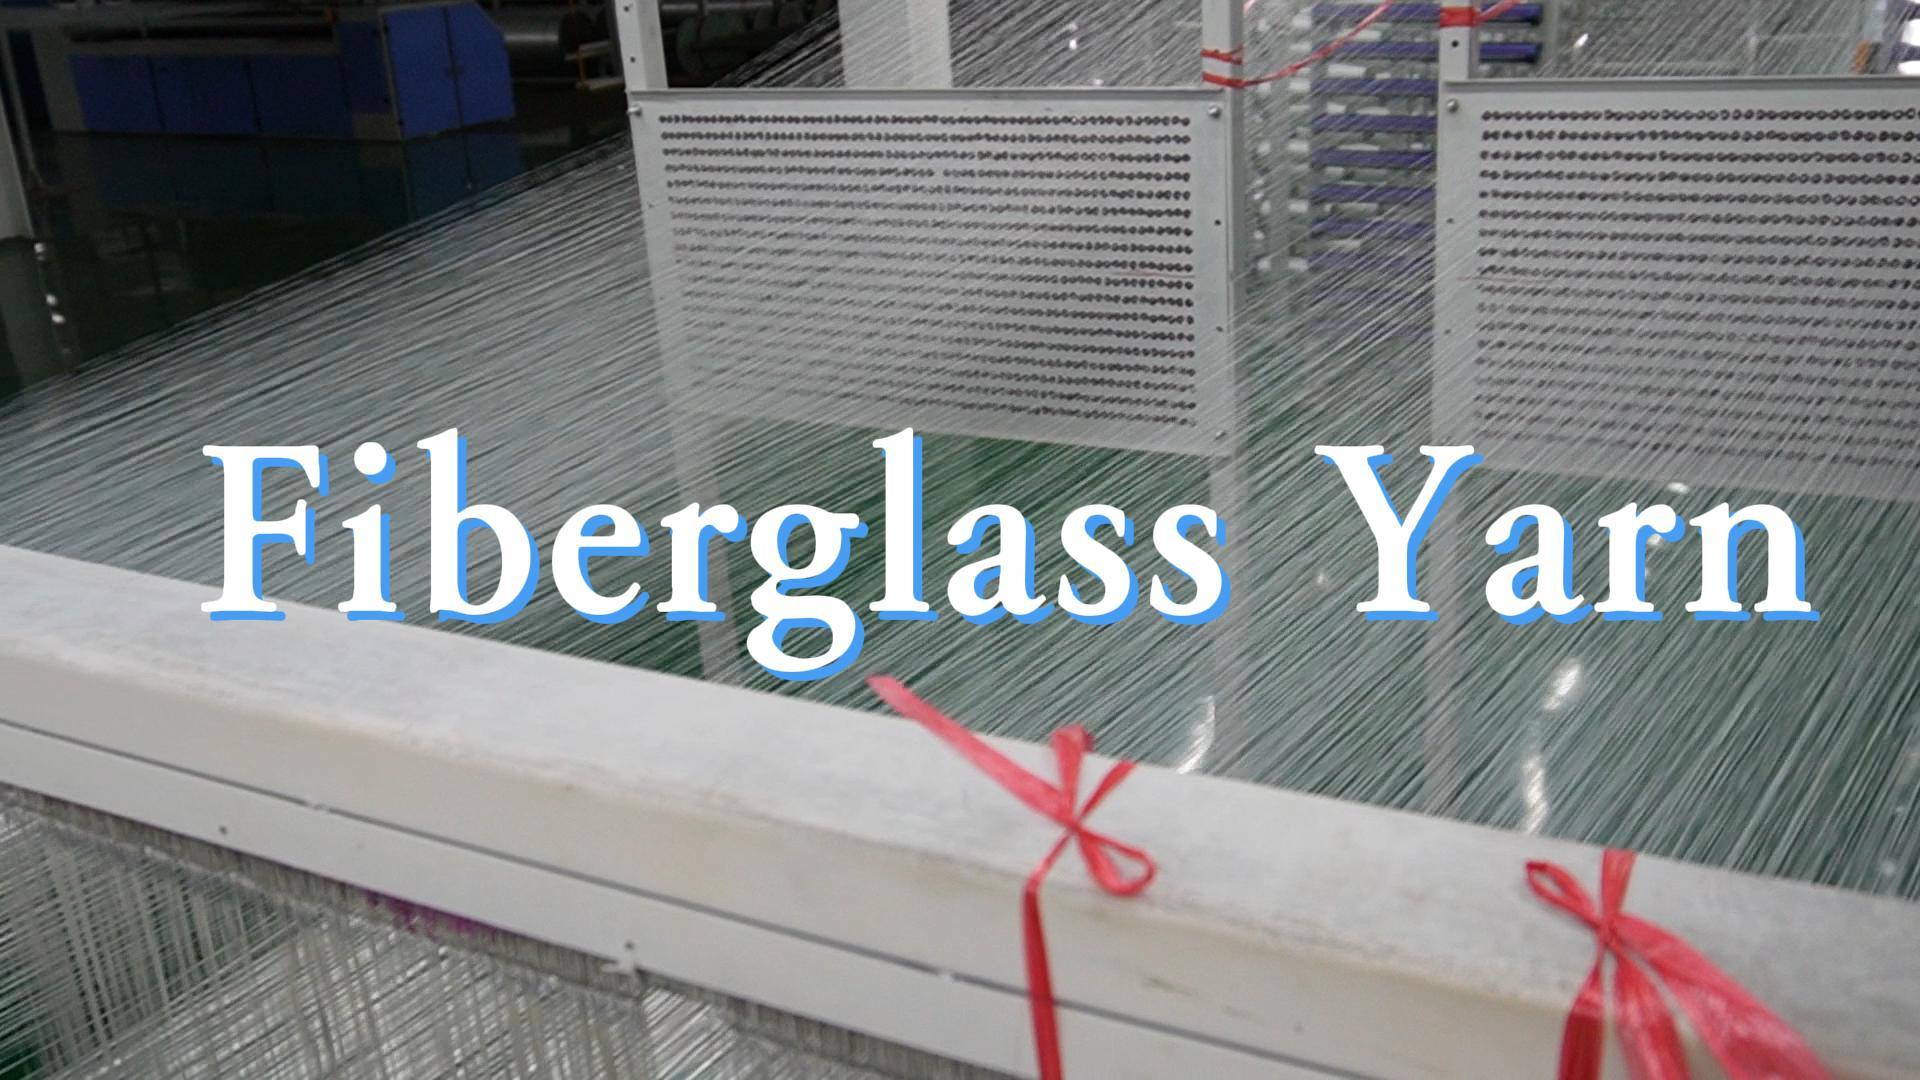 ဖိုက်ဘာမှန်သည် fiberglass charglass ကိုခုတ်လှဲချီတက်